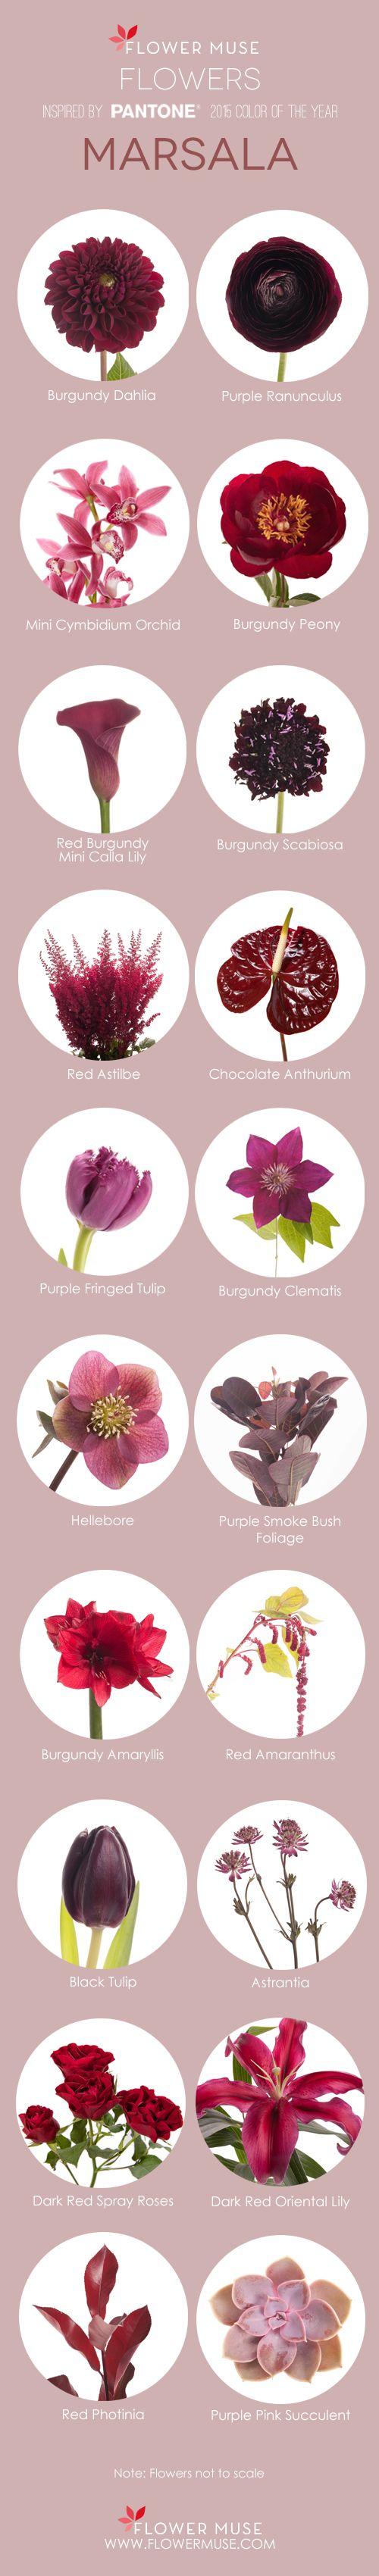 زفاف - Color Of The Year Marsala Flower Inspiration - Flower Muse Blog